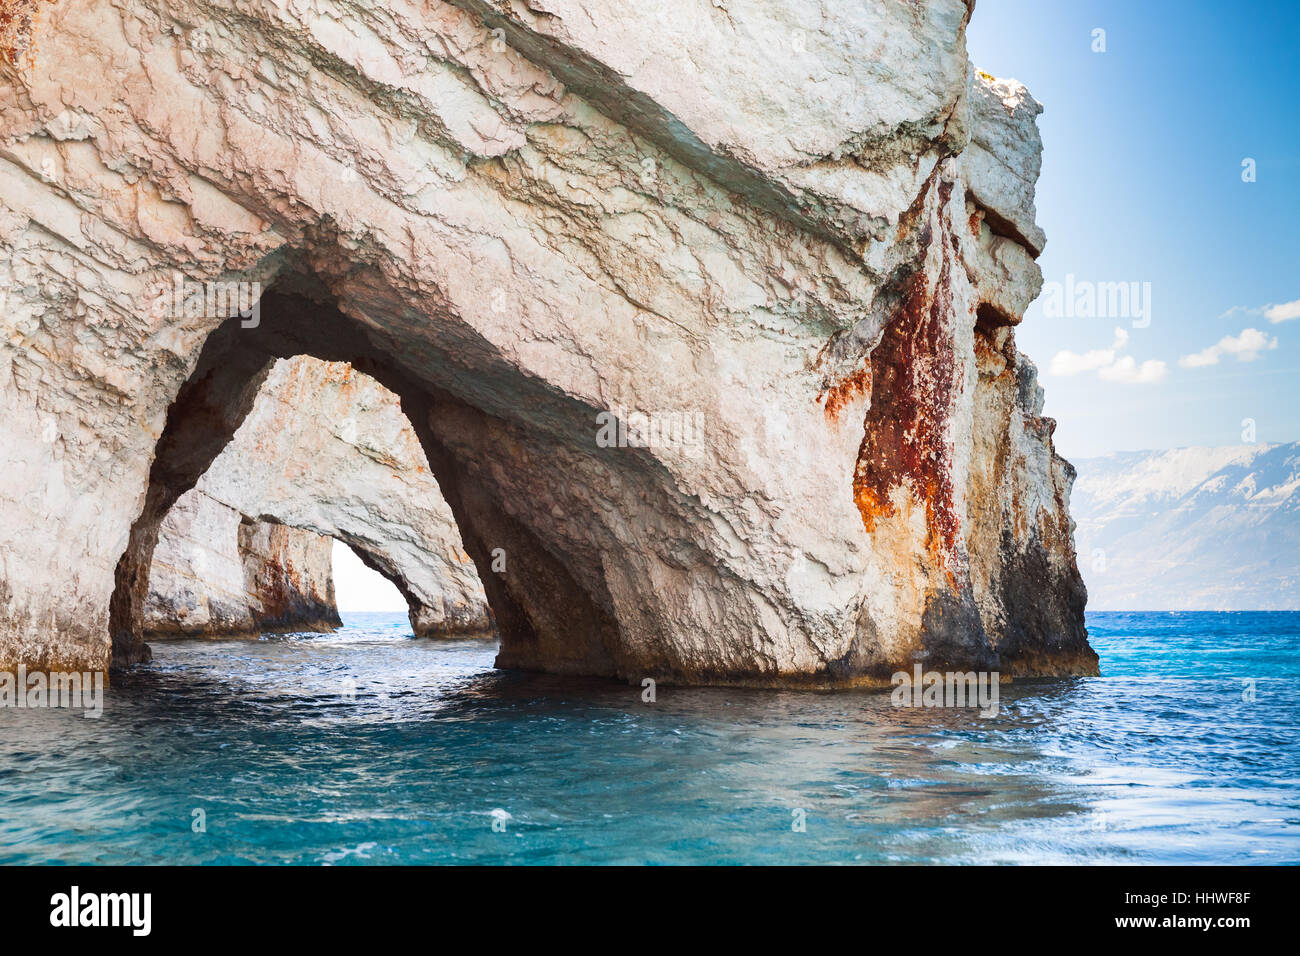 Grotte blu. Rocce dell'isola greca di Zante con archi di roccia monumento naturale, popolare destinazione turistica Foto Stock